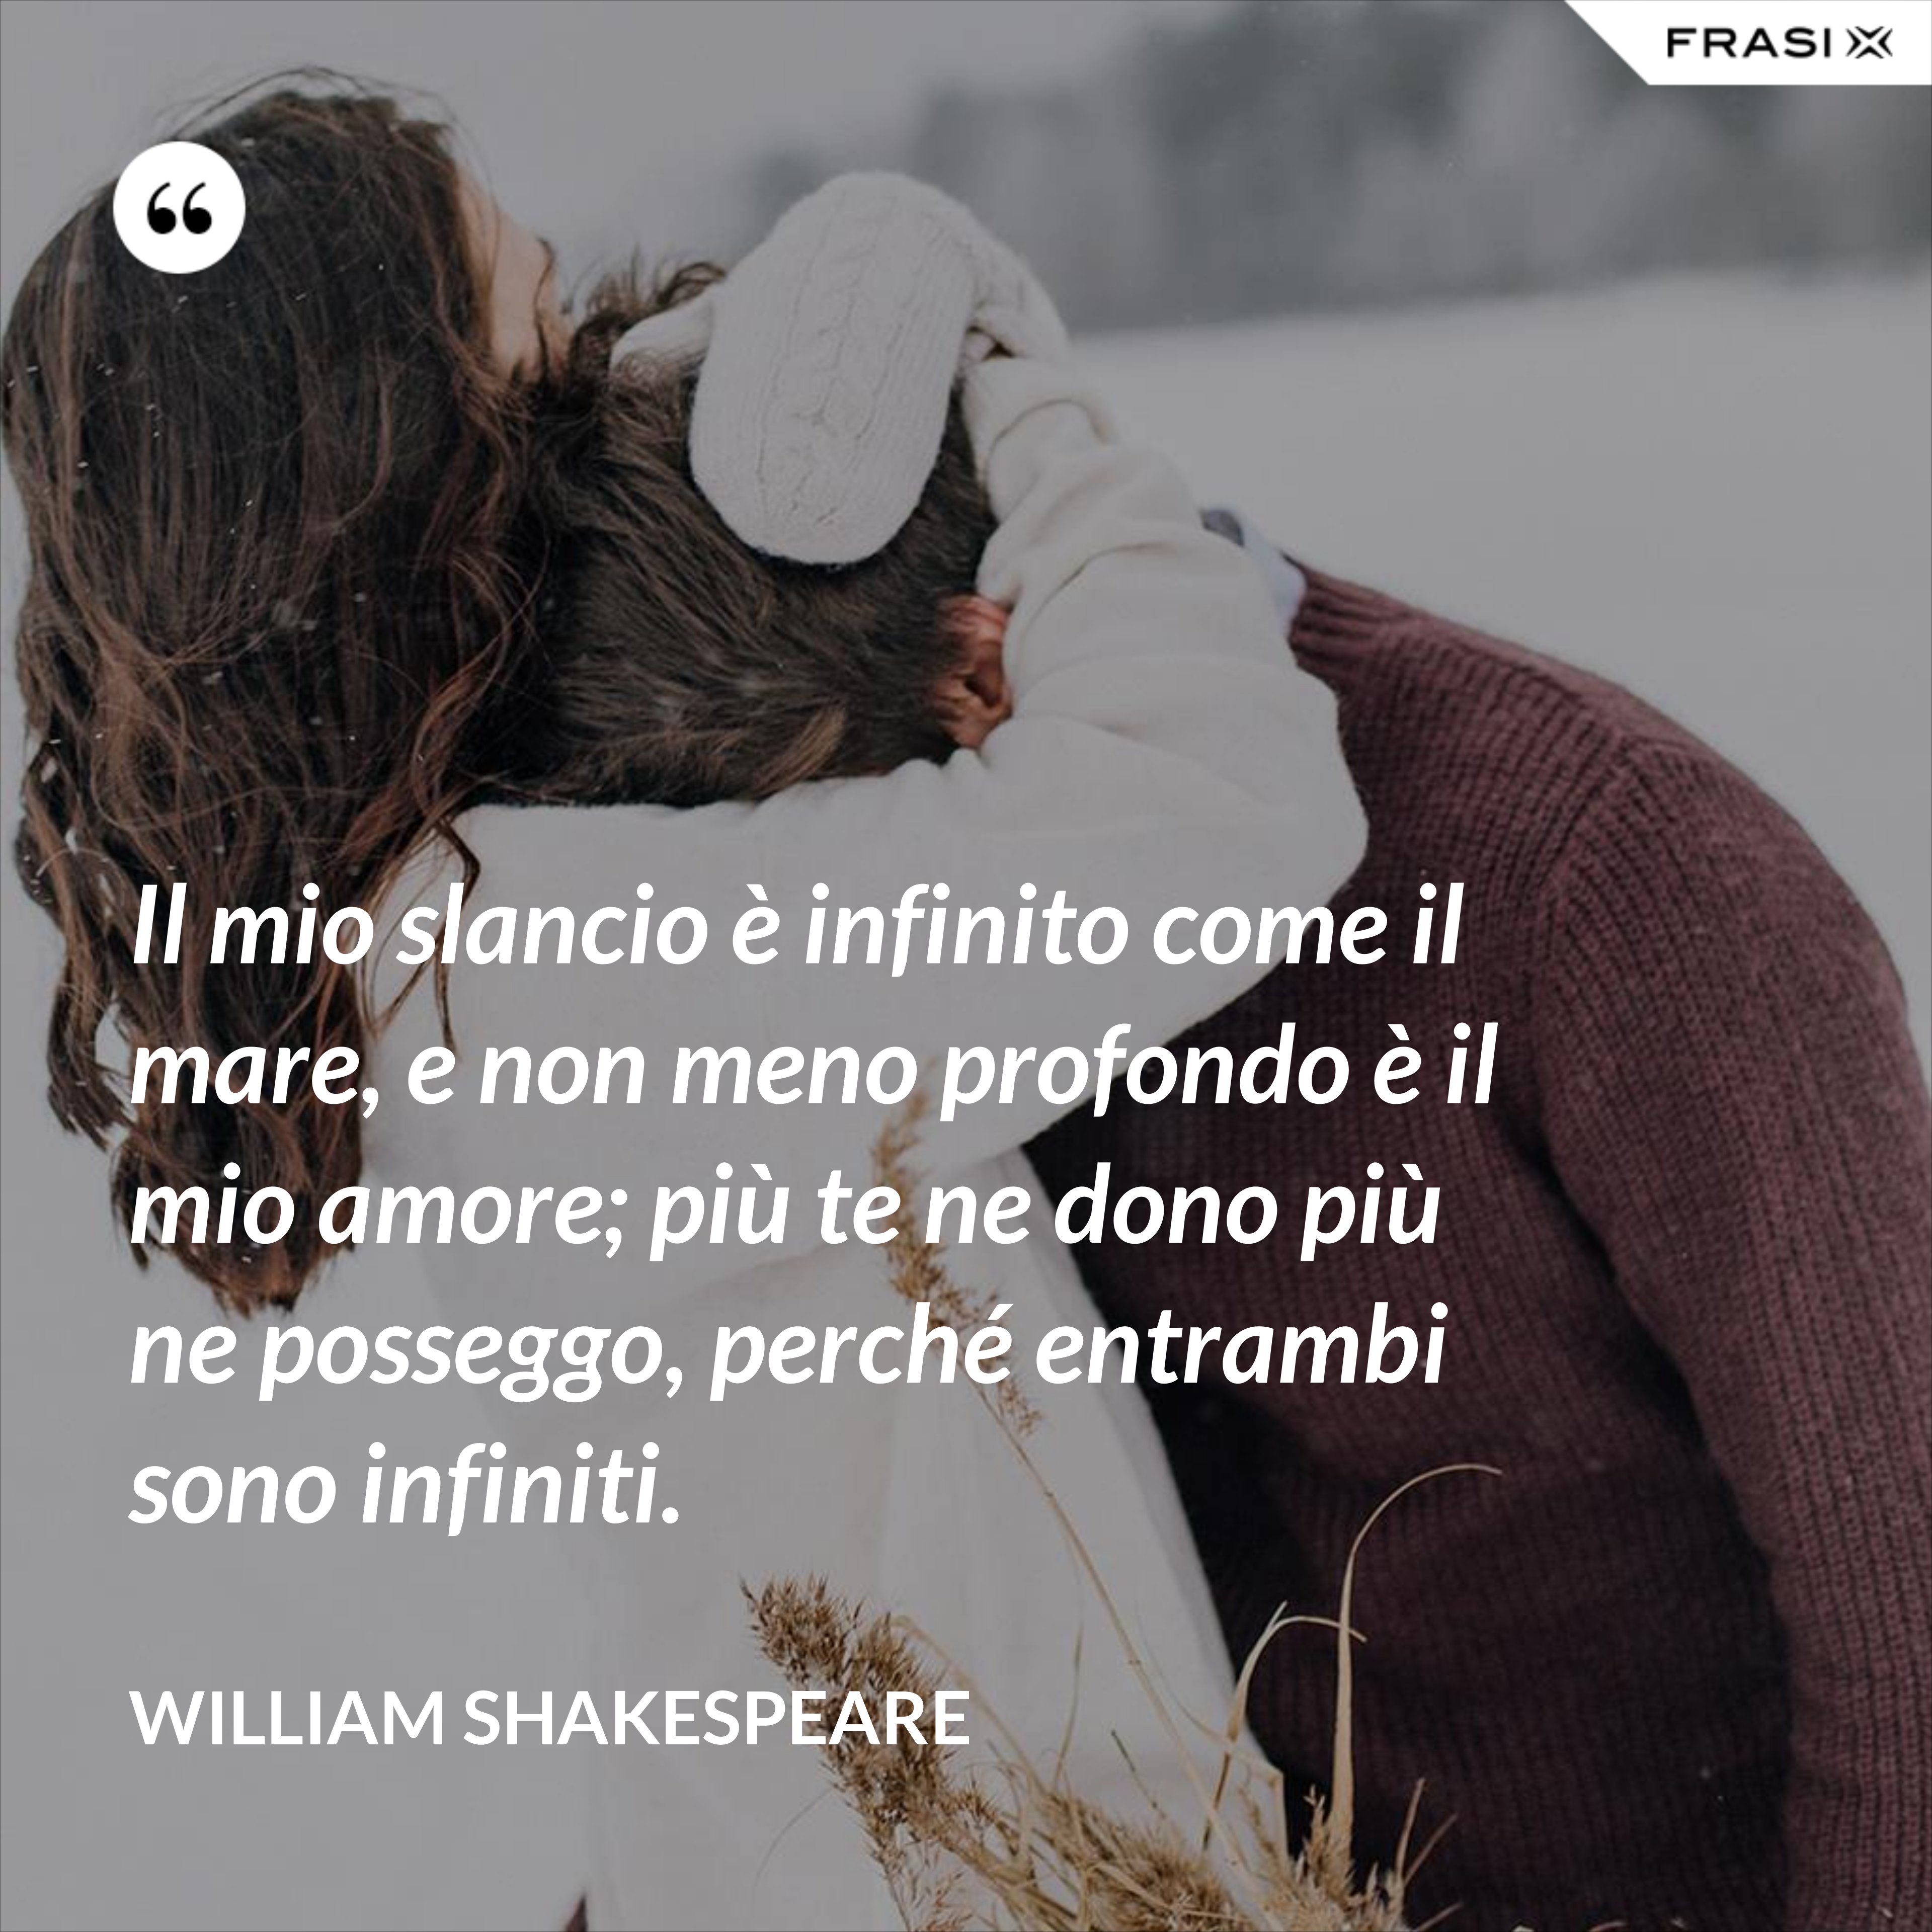 Il mio slancio è infinito come il mare, e non meno profondo è il mio amore; più te ne dono più ne posseggo, perché entrambi sono infiniti. - William Shakespeare